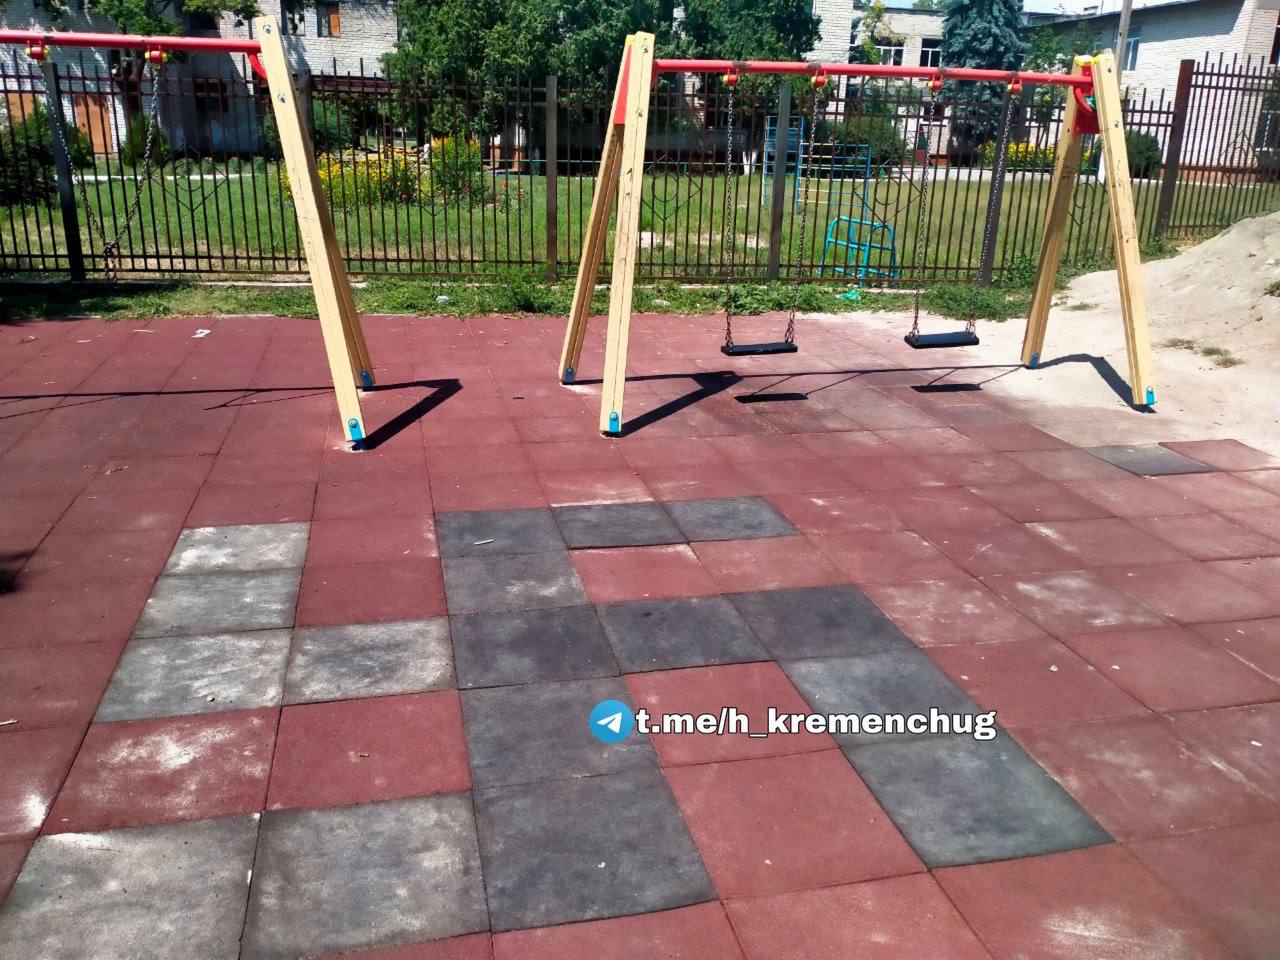 Обычная детская площадка на украине | Пикабу